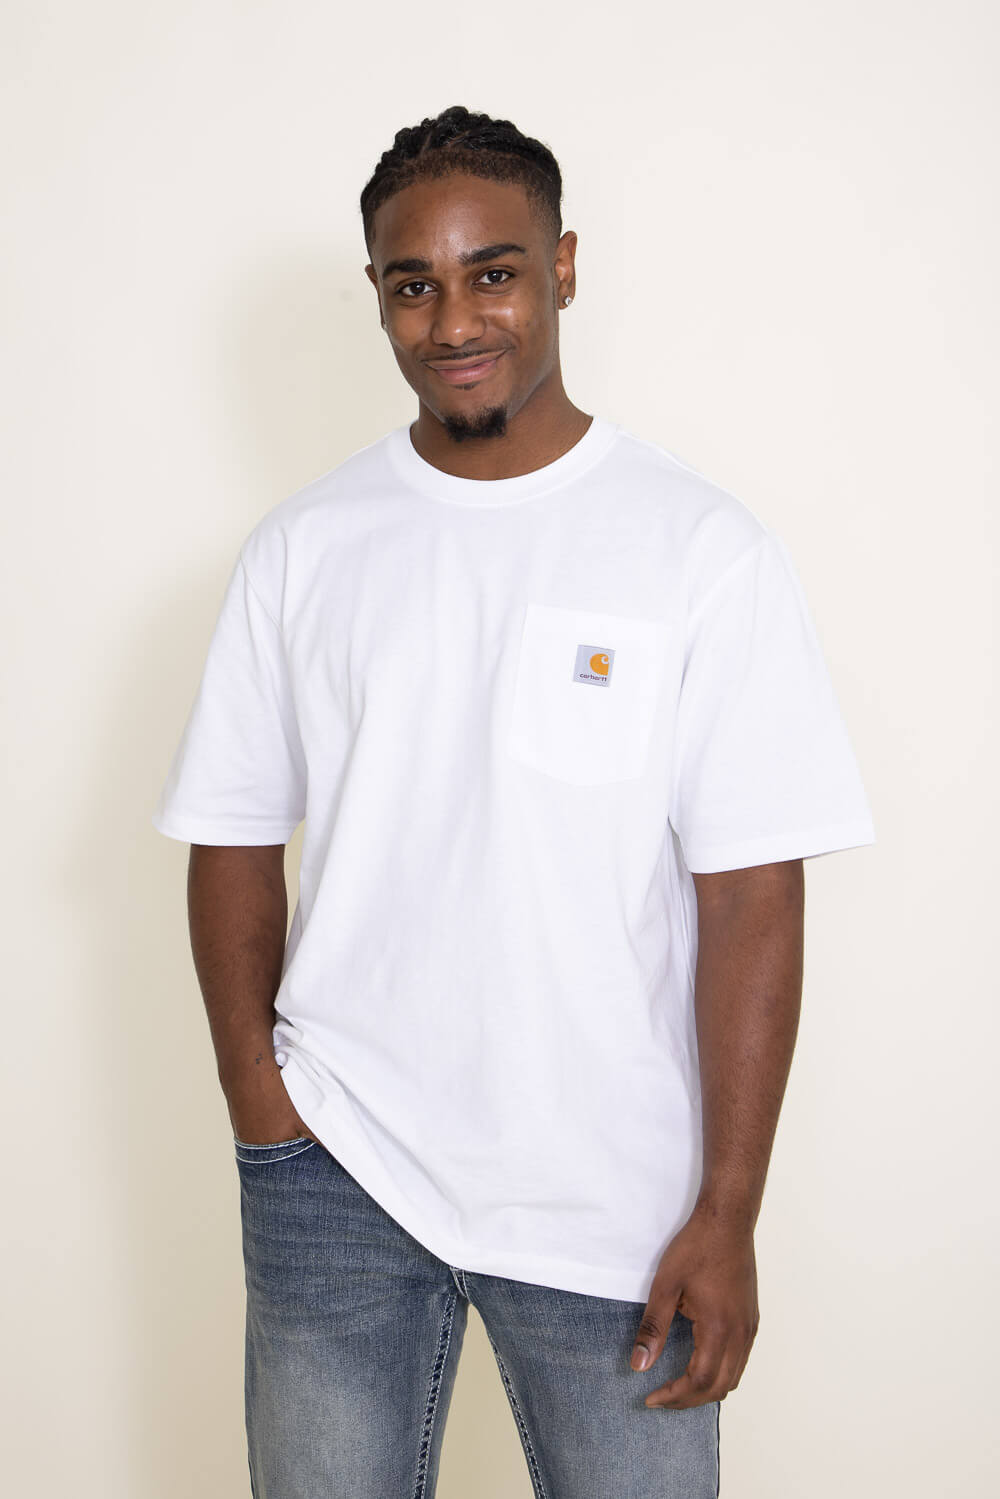 Carhartt Pocket T-Shirt for Men in White